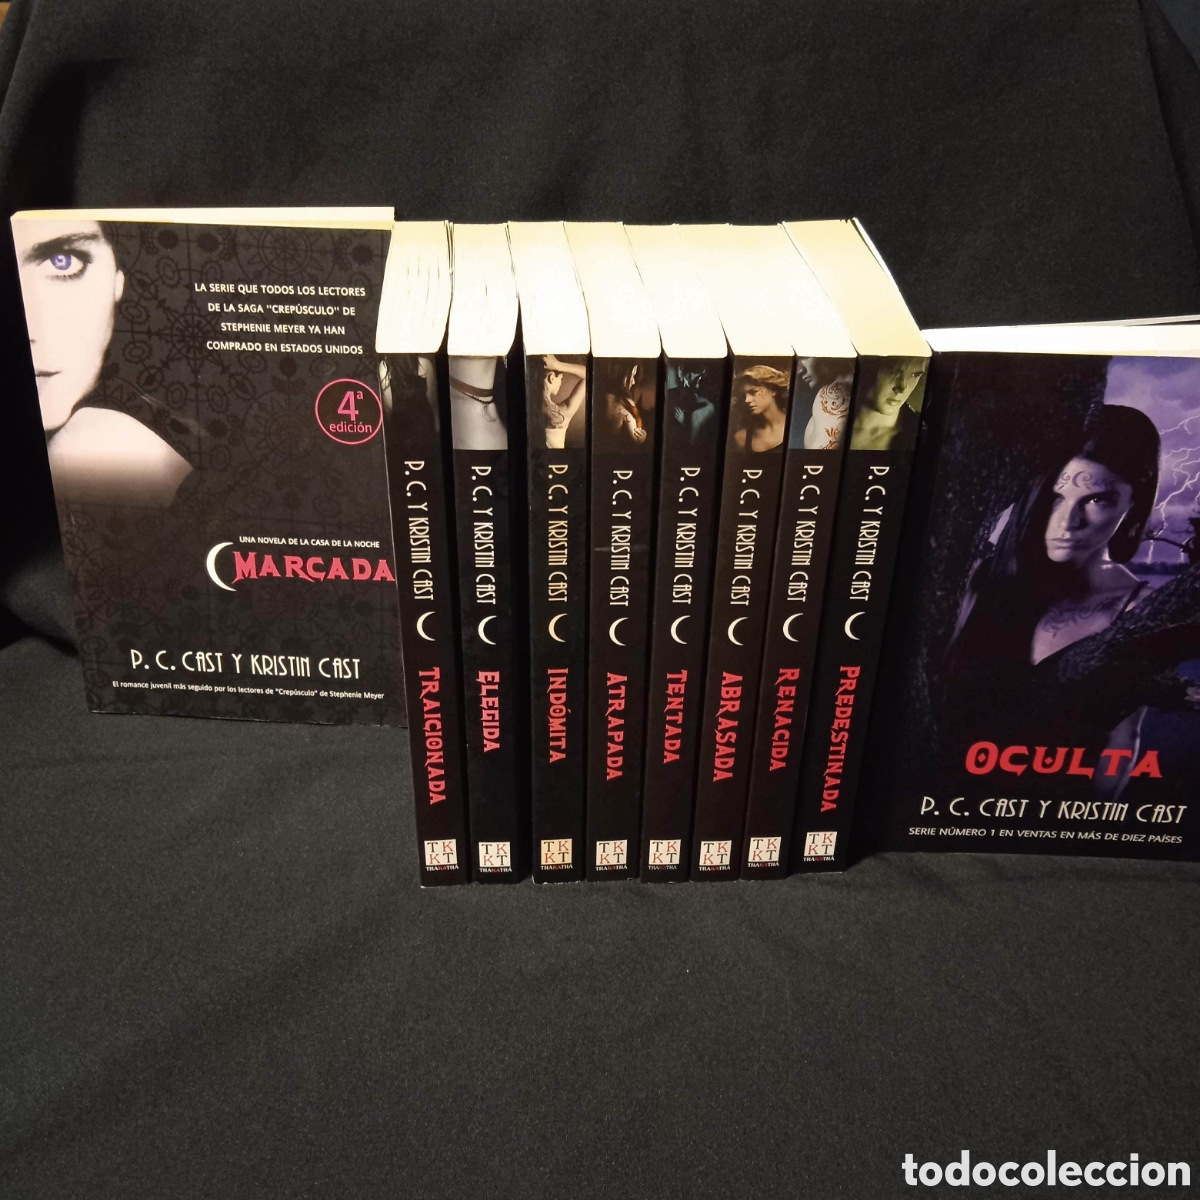 Colección completa de los libros de Casa de la noche 6-trakatra